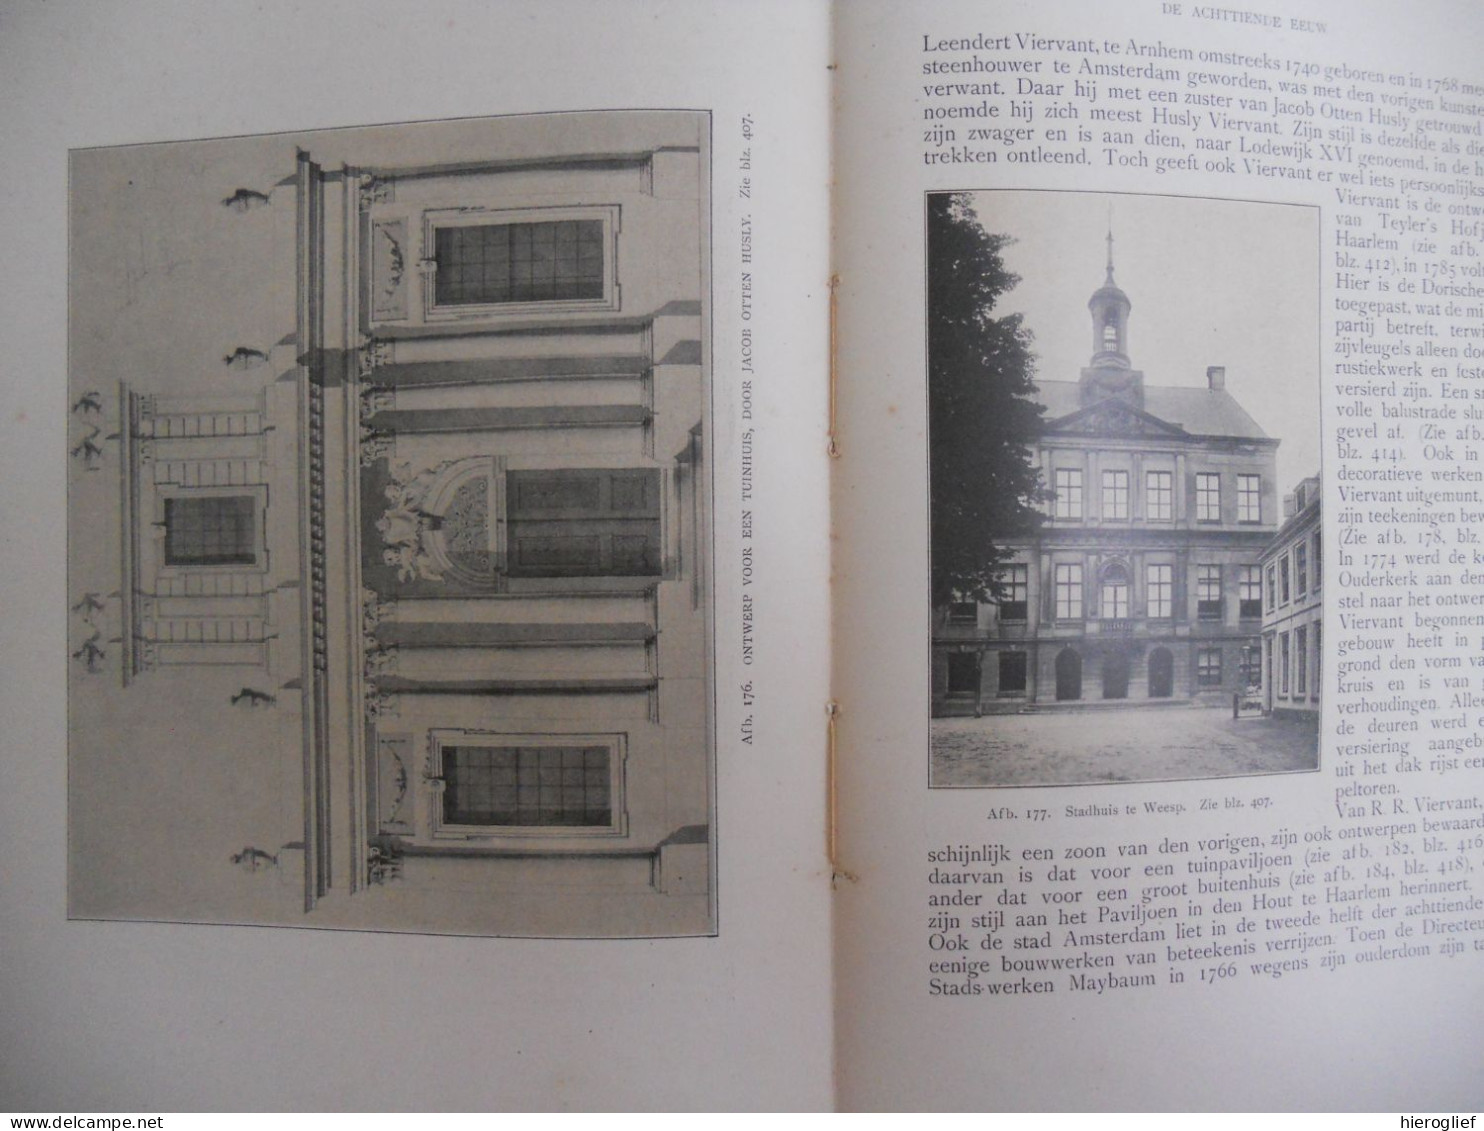 Geschiedenis der NEDERLANDSCHE BOUWKUNST door A.W Weissman 1912 van Looy Amsterdam / Nederland architectuur